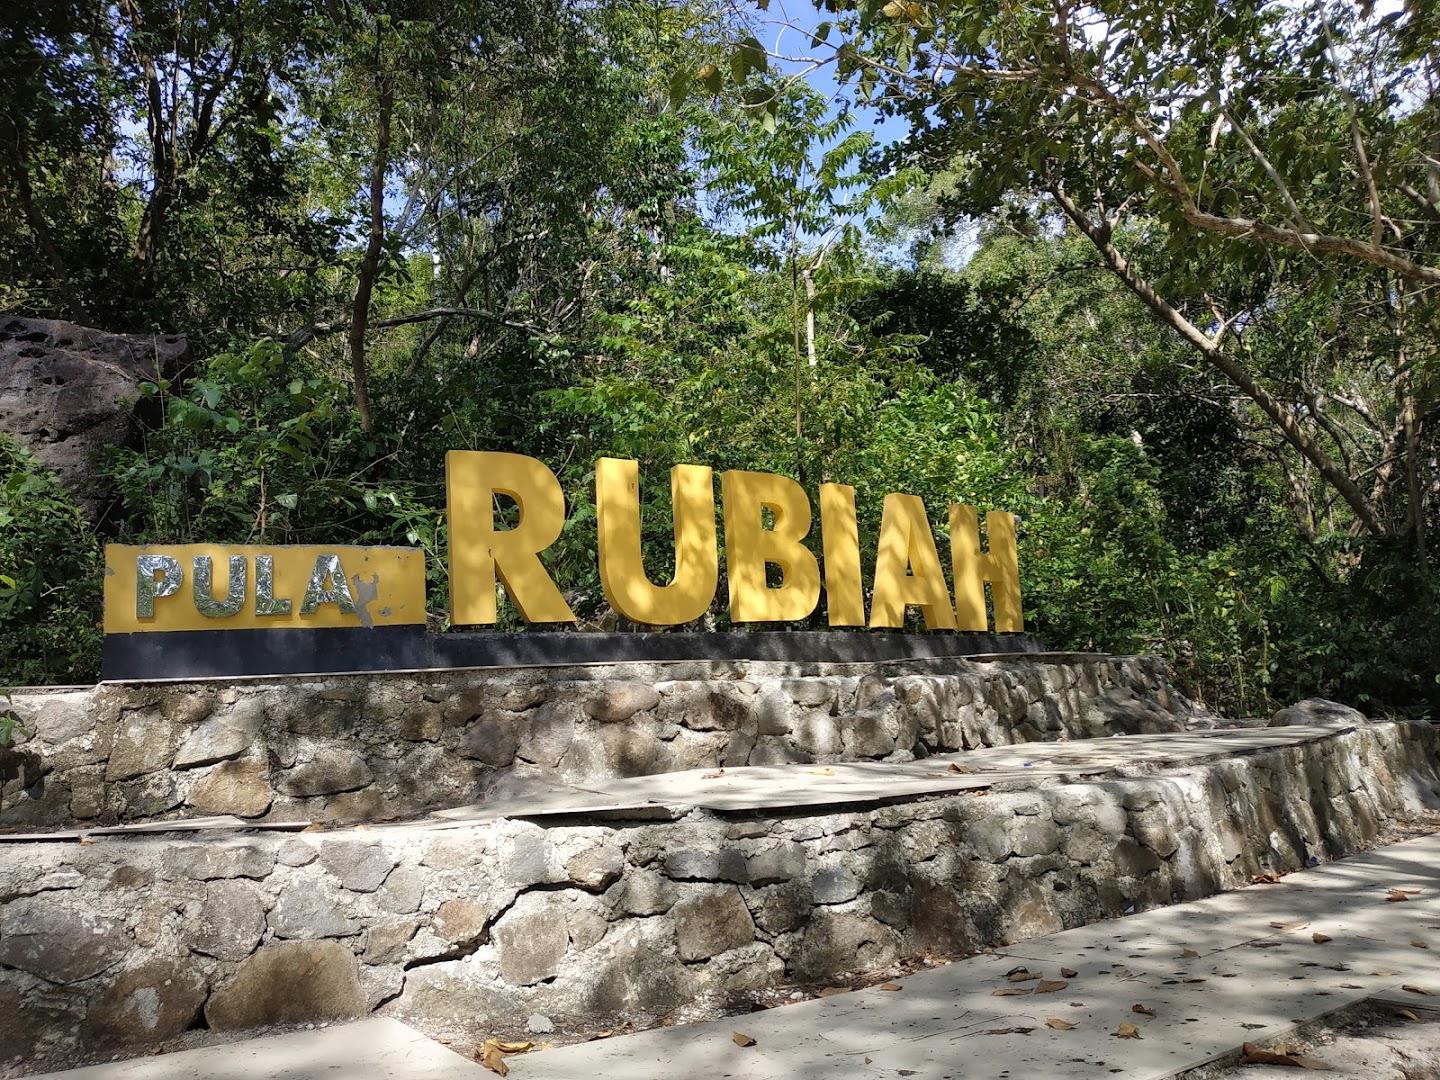 Rubiah Beach